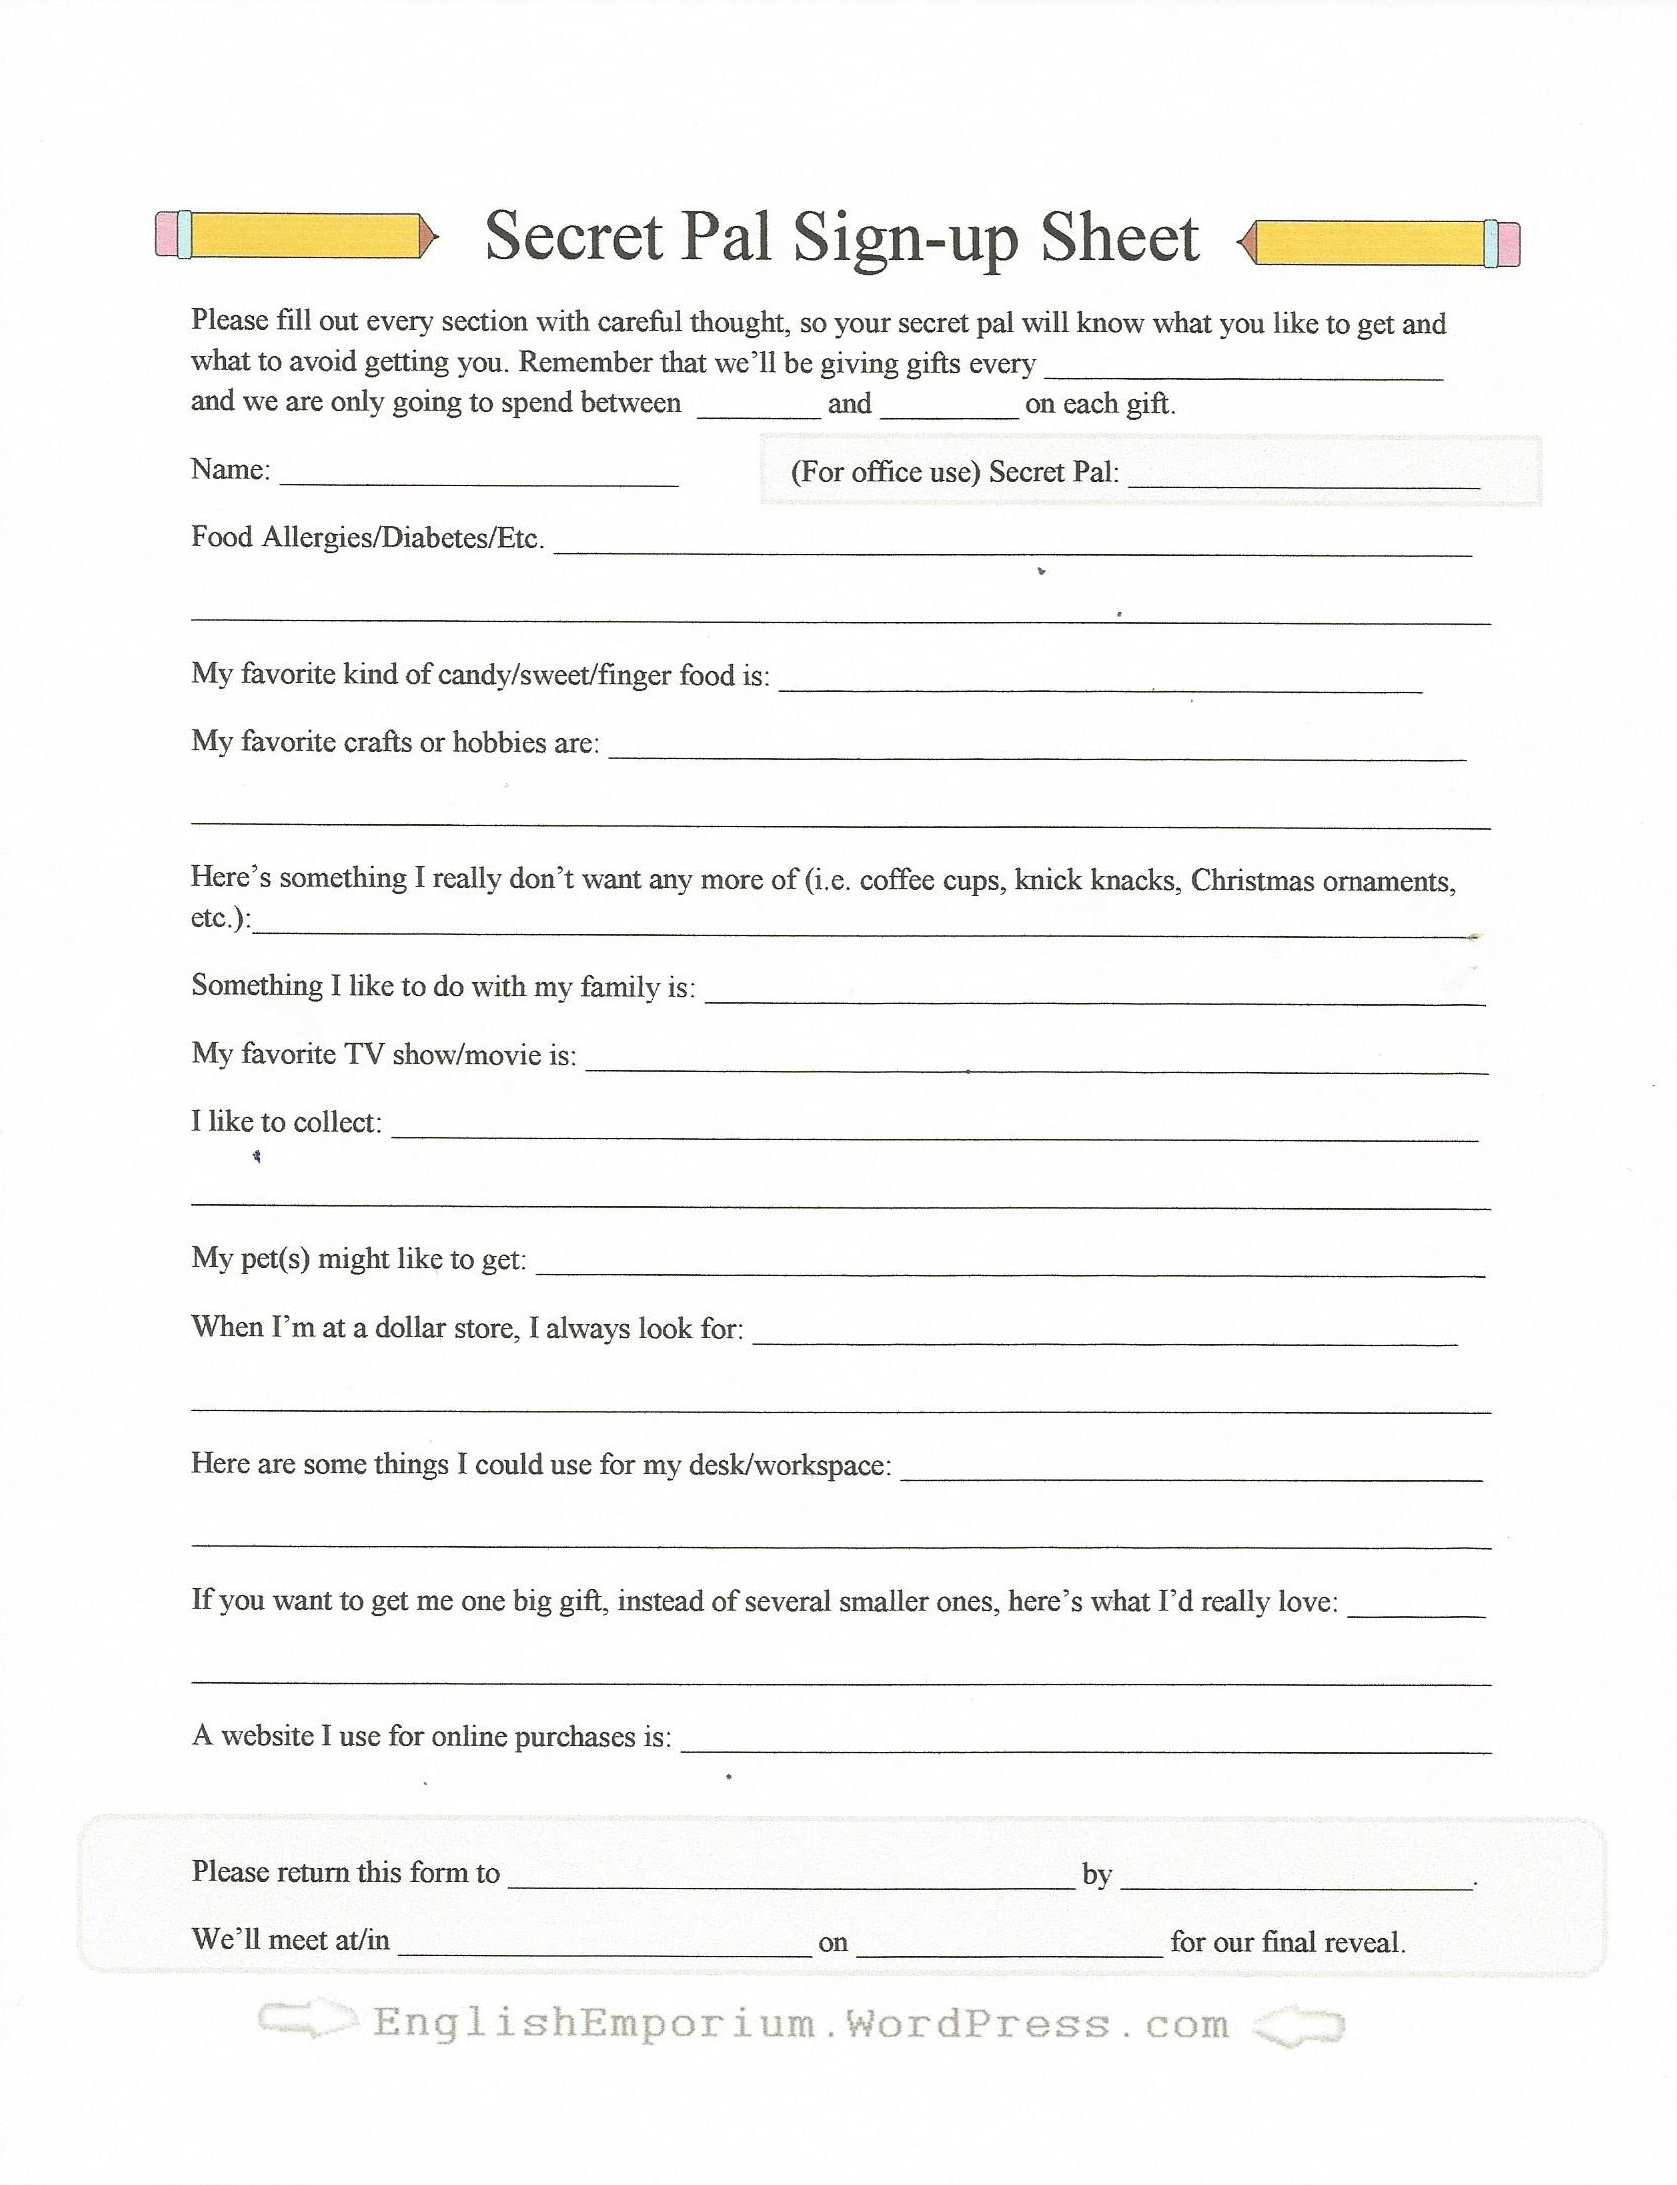 Secret Pal Questionnaire Form Sign-Up Sheet | Secret Pal Ideas From - Free Printable Secret Pal Forms